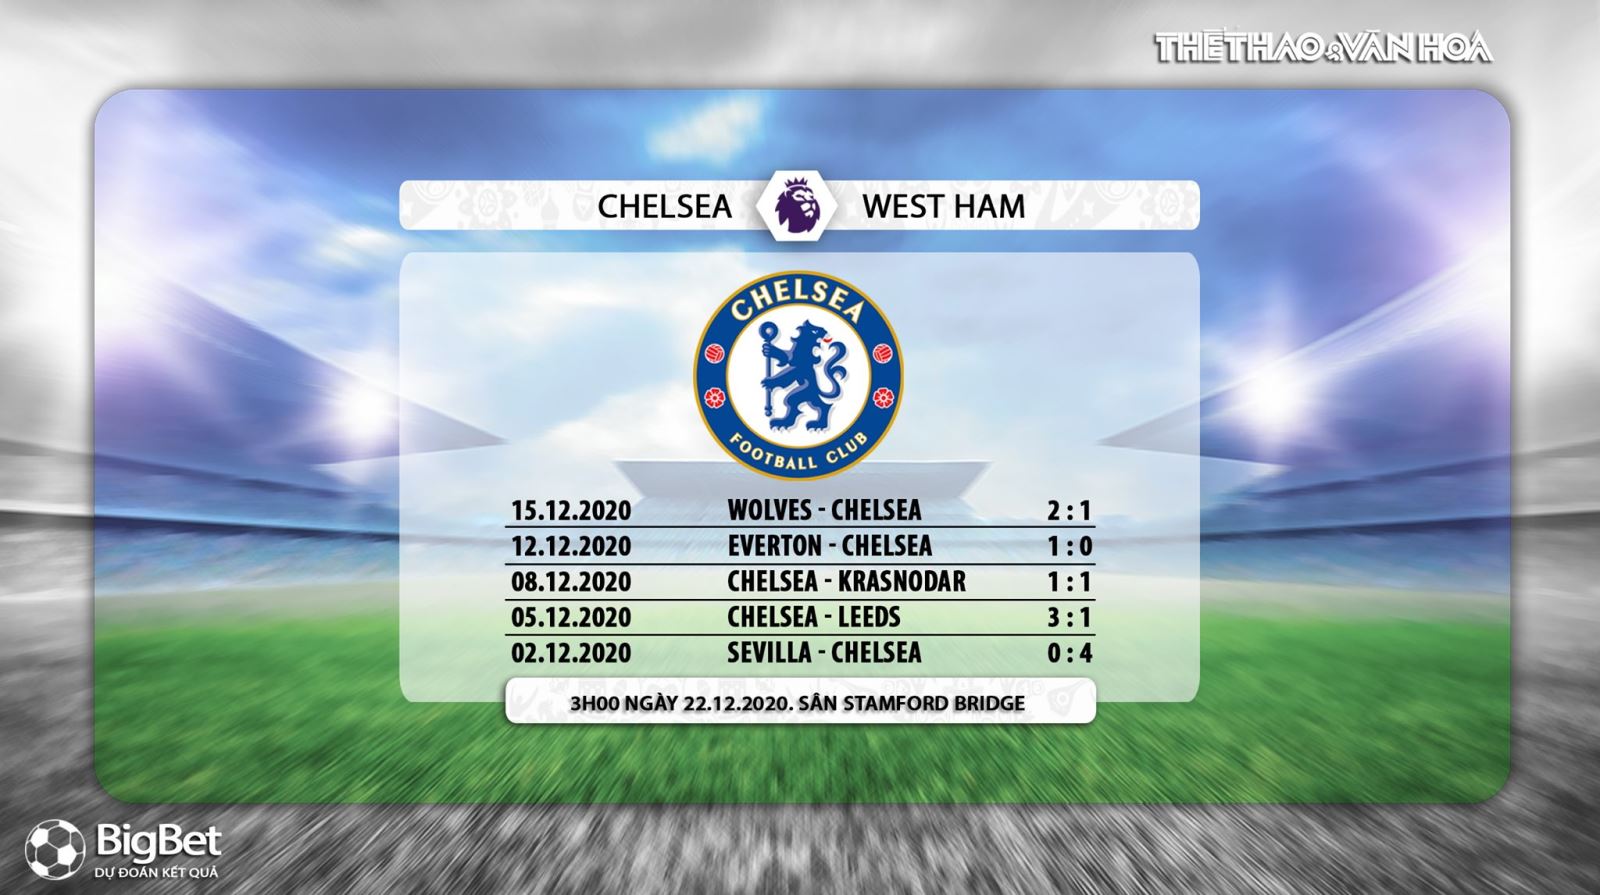 Keo nha cai, Nhận định kết quả, Chelsea vs West Ham, Trực tiếp bóng đá, Ngoại hạng Anh vòng 14, nhận định bóng đá Chelsea vs West Ham, trực tiếp Chelsea vs West Ham, Kèo Chelsea, K+PM